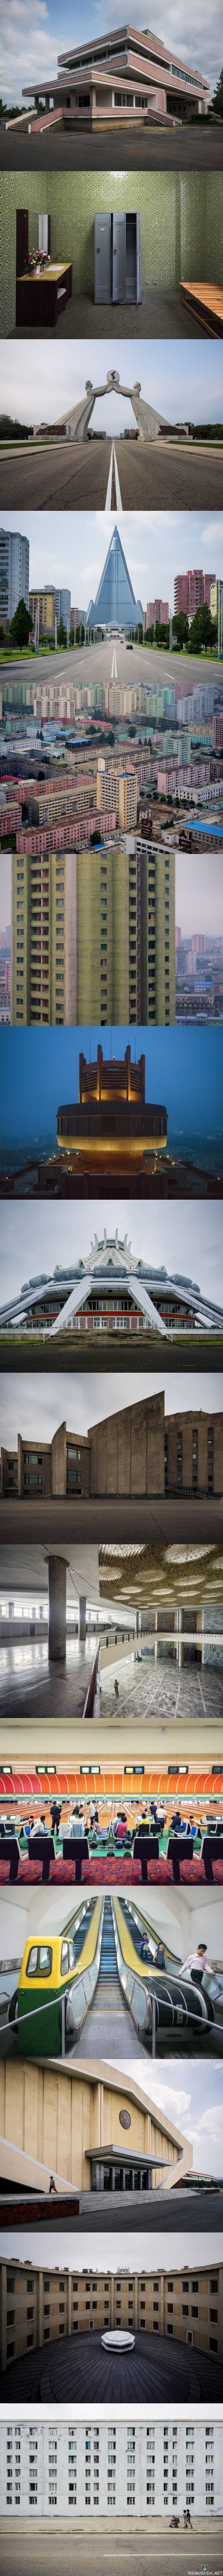 Pohjois-korean arkkitehtuuri